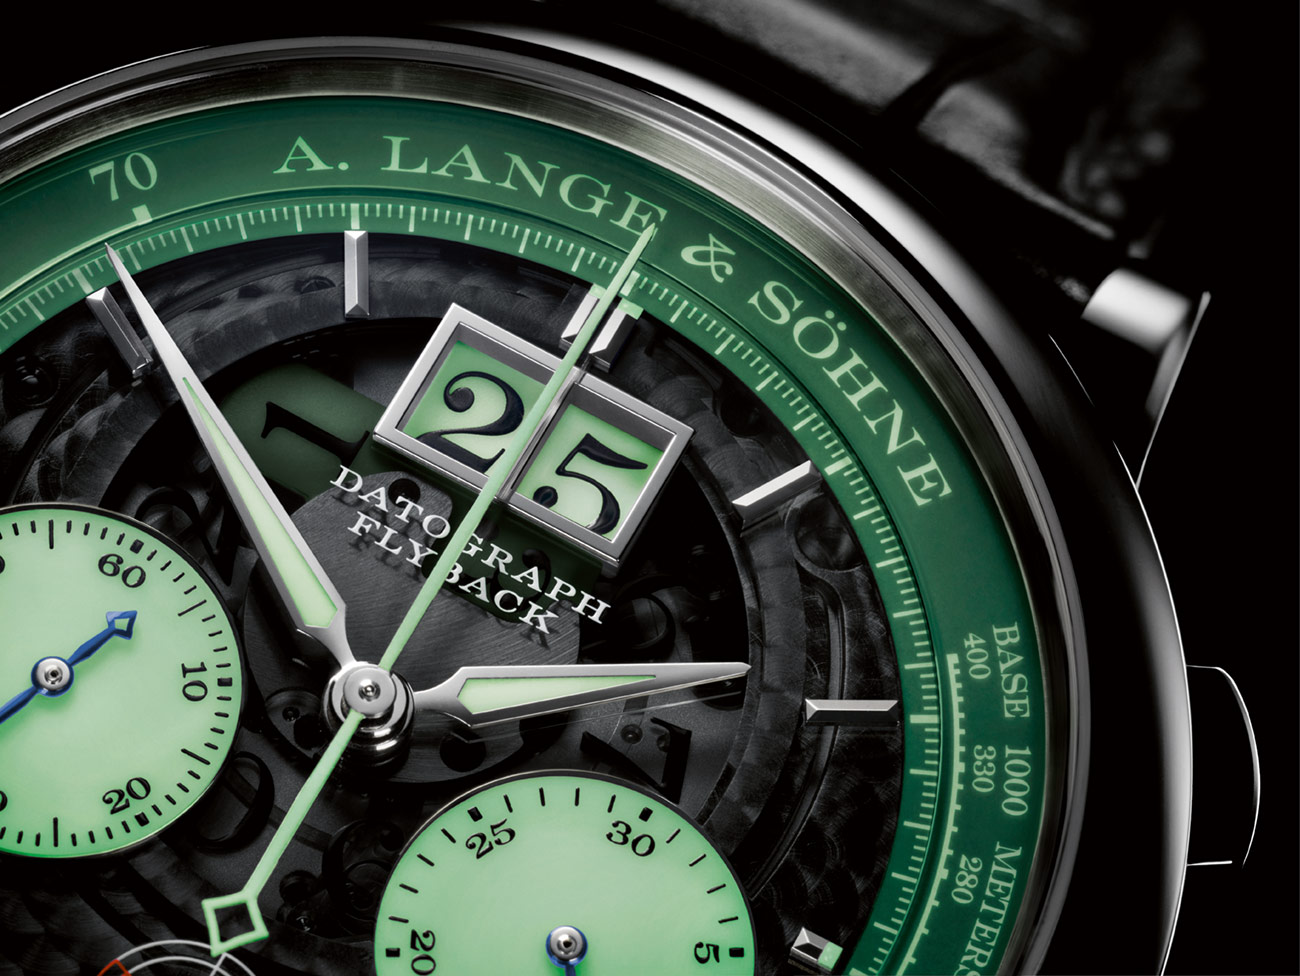 A. Lange & Söhne Datograph Up/Down Lumen dial closeup